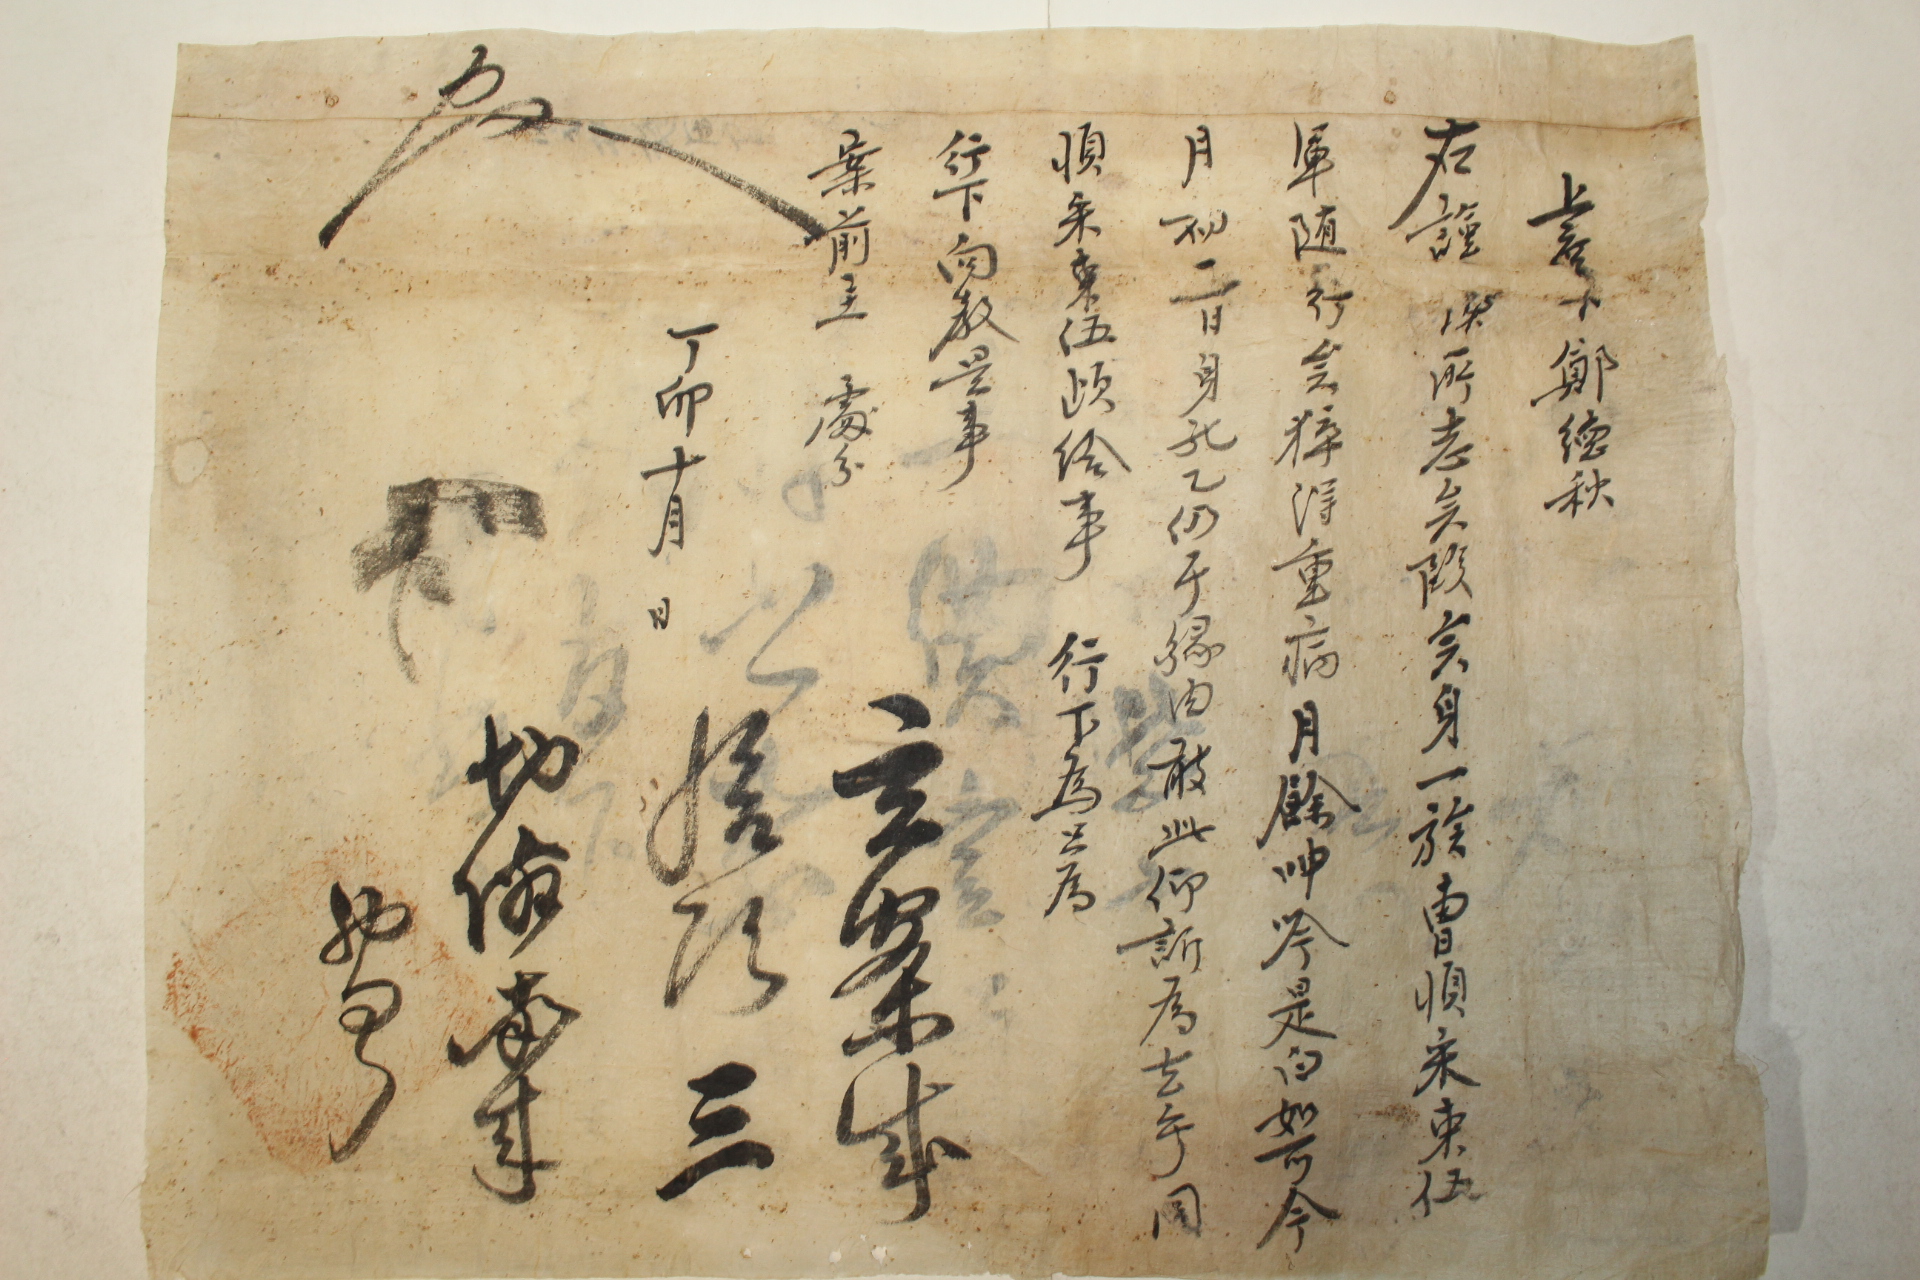 조선시대 경평군(慶平君)문서외 수군관련문서 18장 일괄(추가사진)